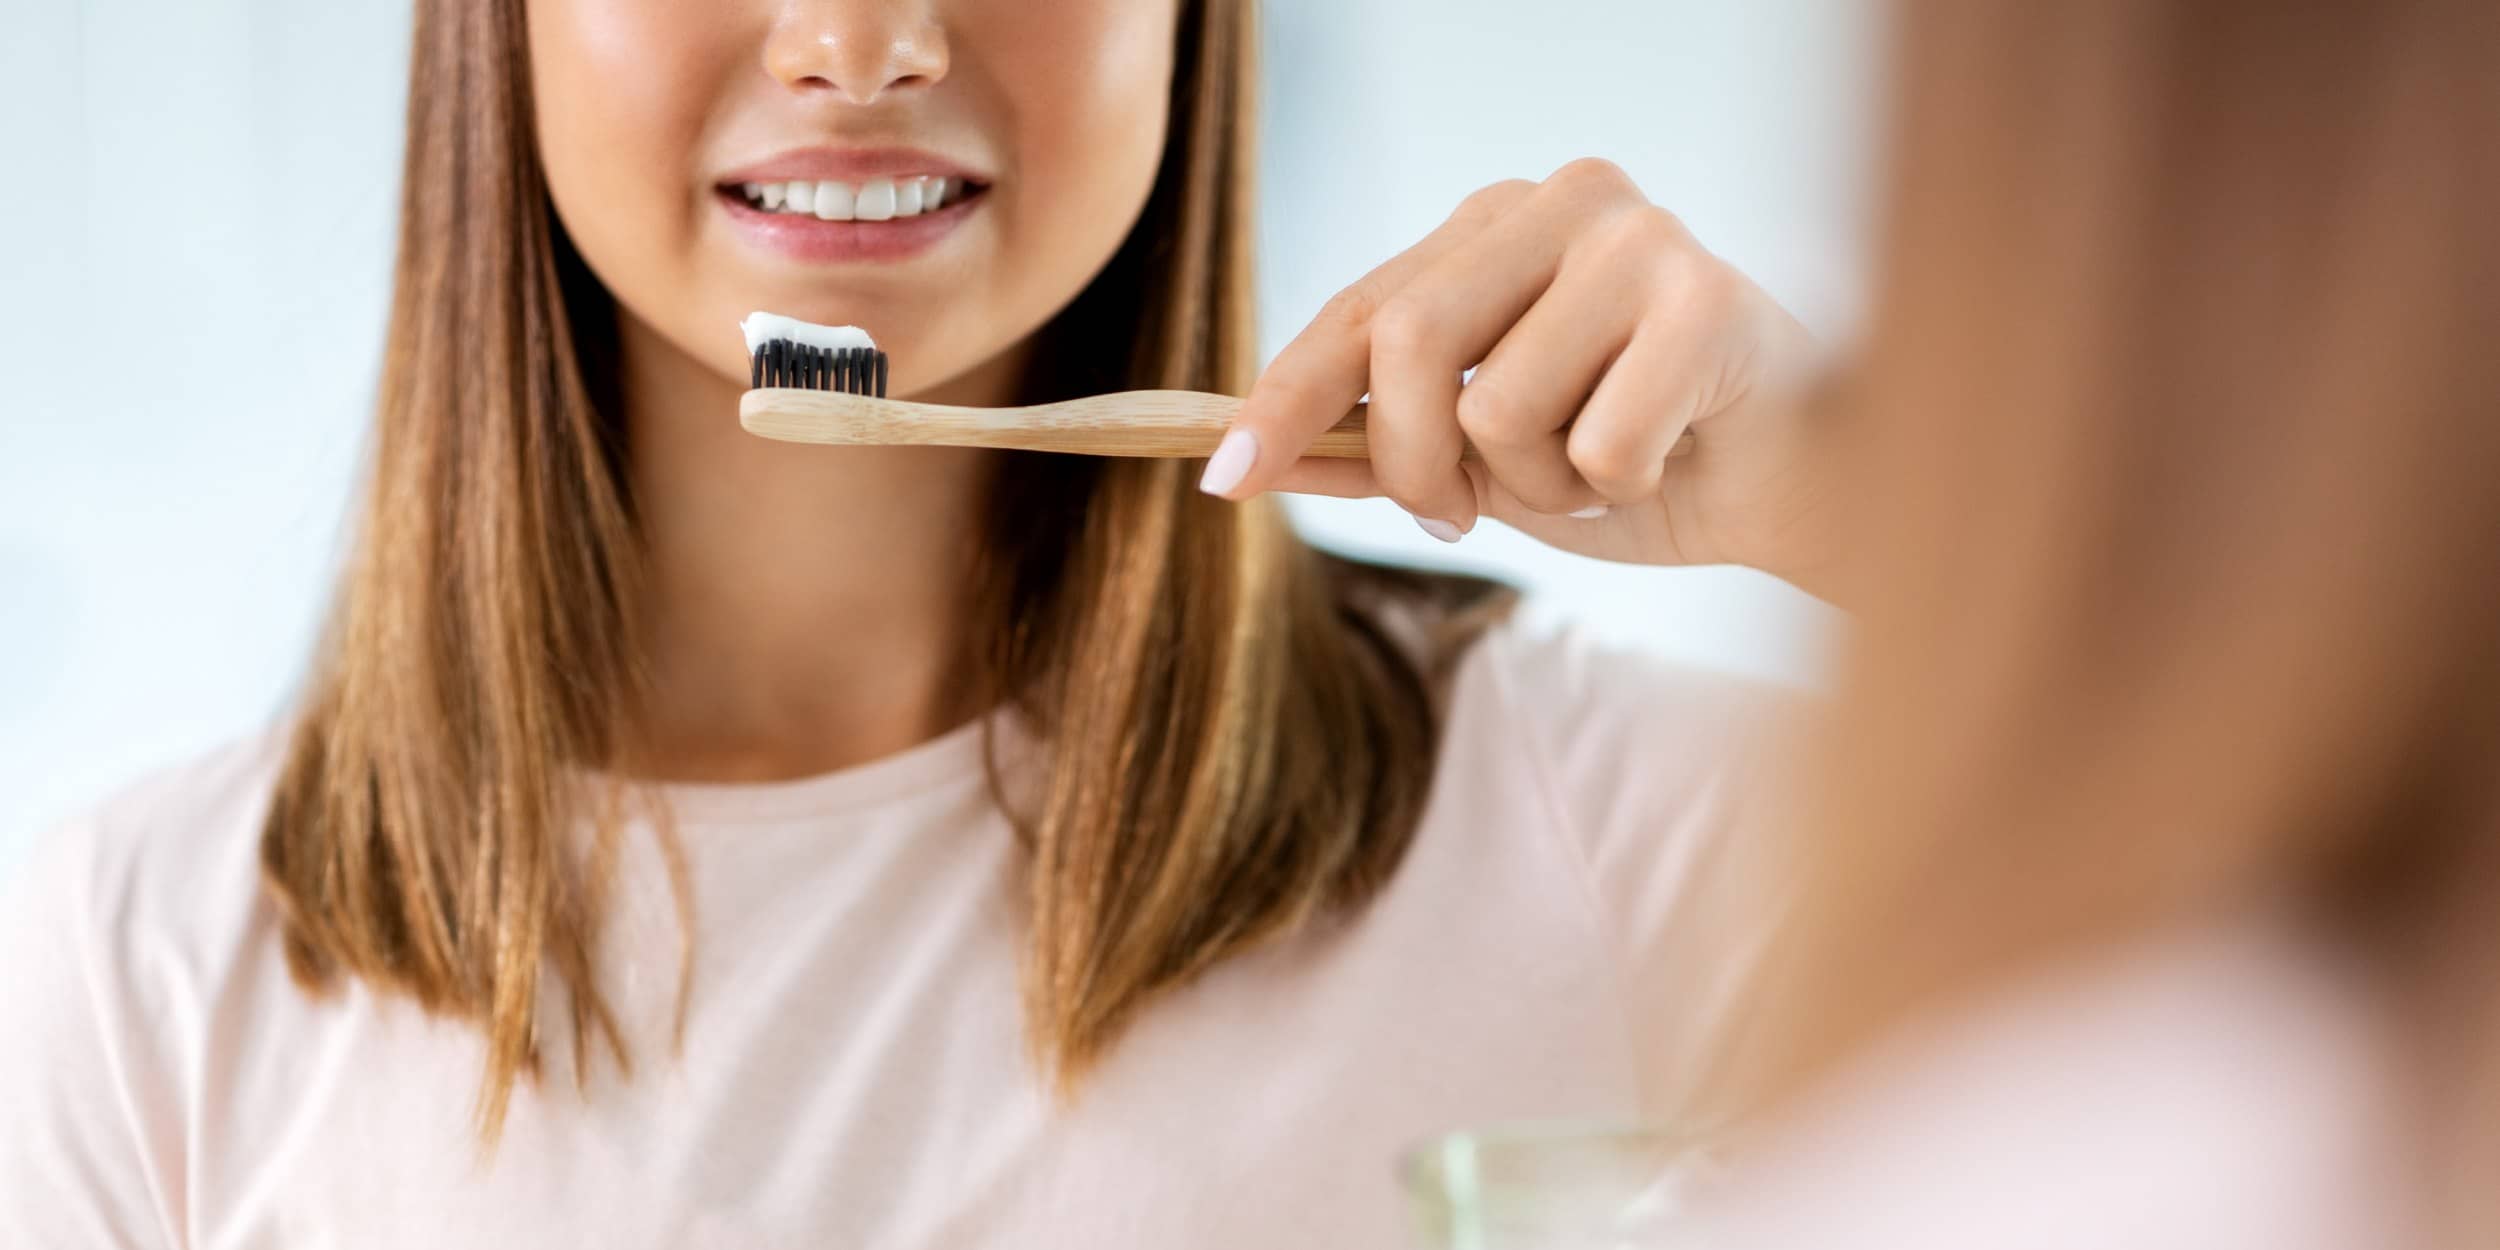 L’hygiène de vie optimale après un blanchiment dentaire | Dr Elhyani | Paris 16